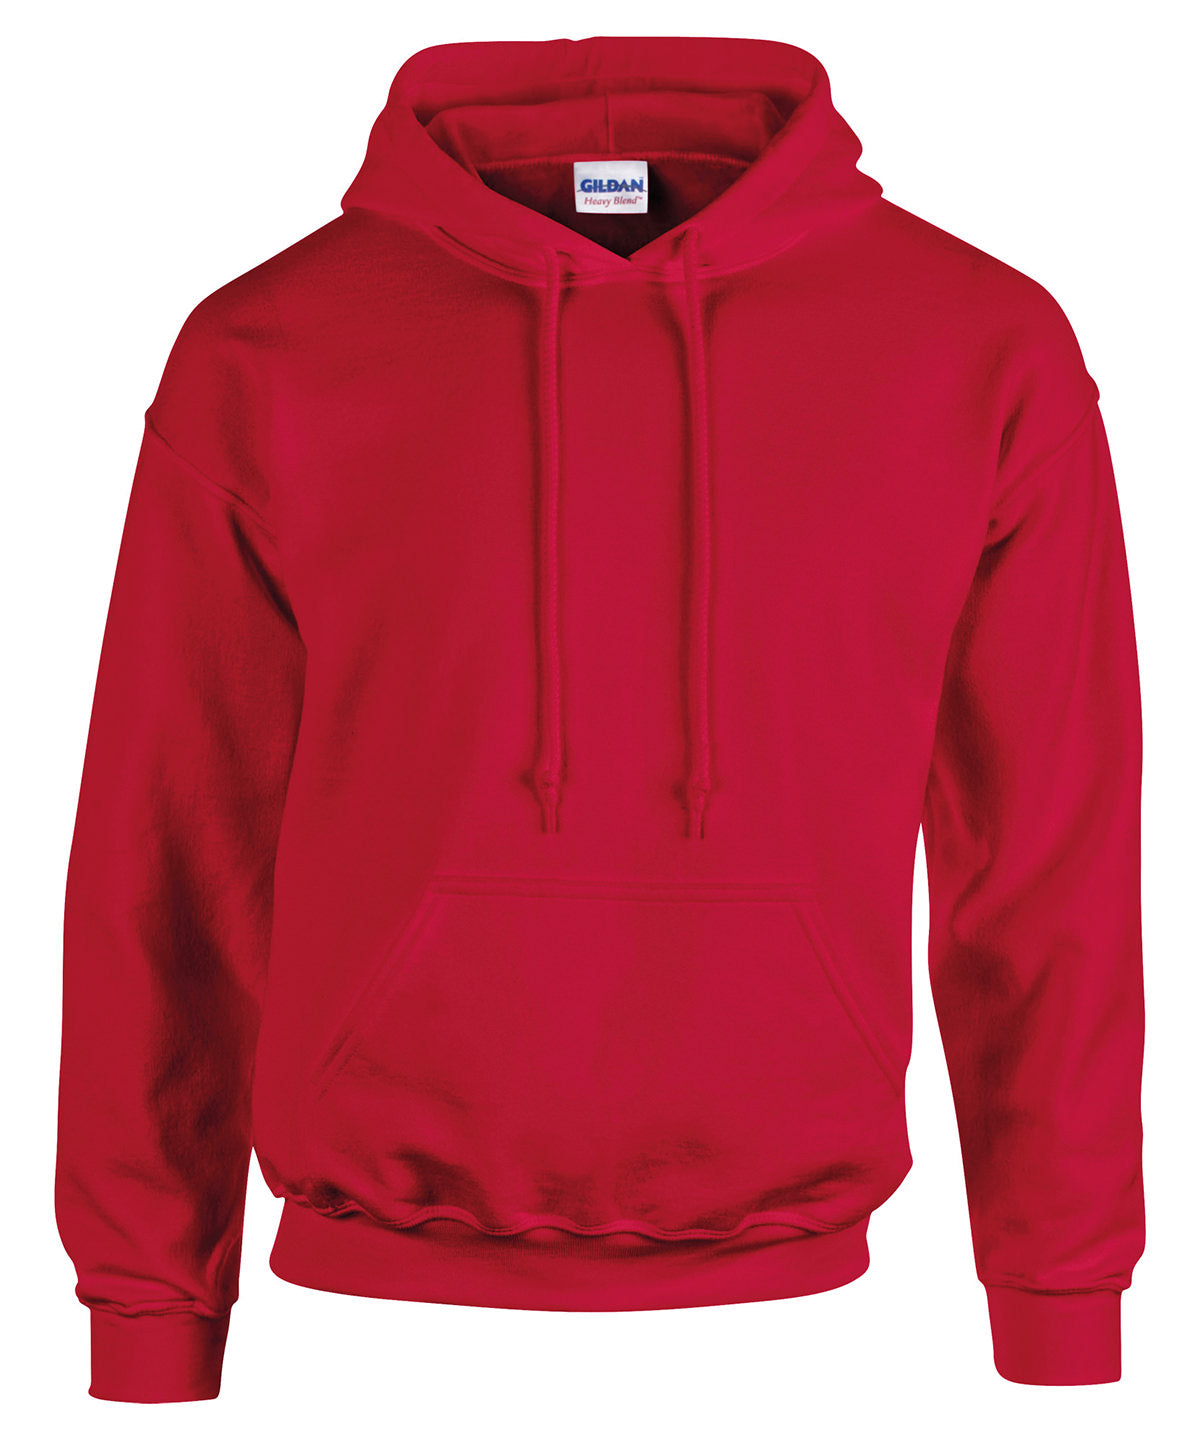 Personalised Hoodies - Dark Red Gildan Heavy Blend™ hooded sweatshirt